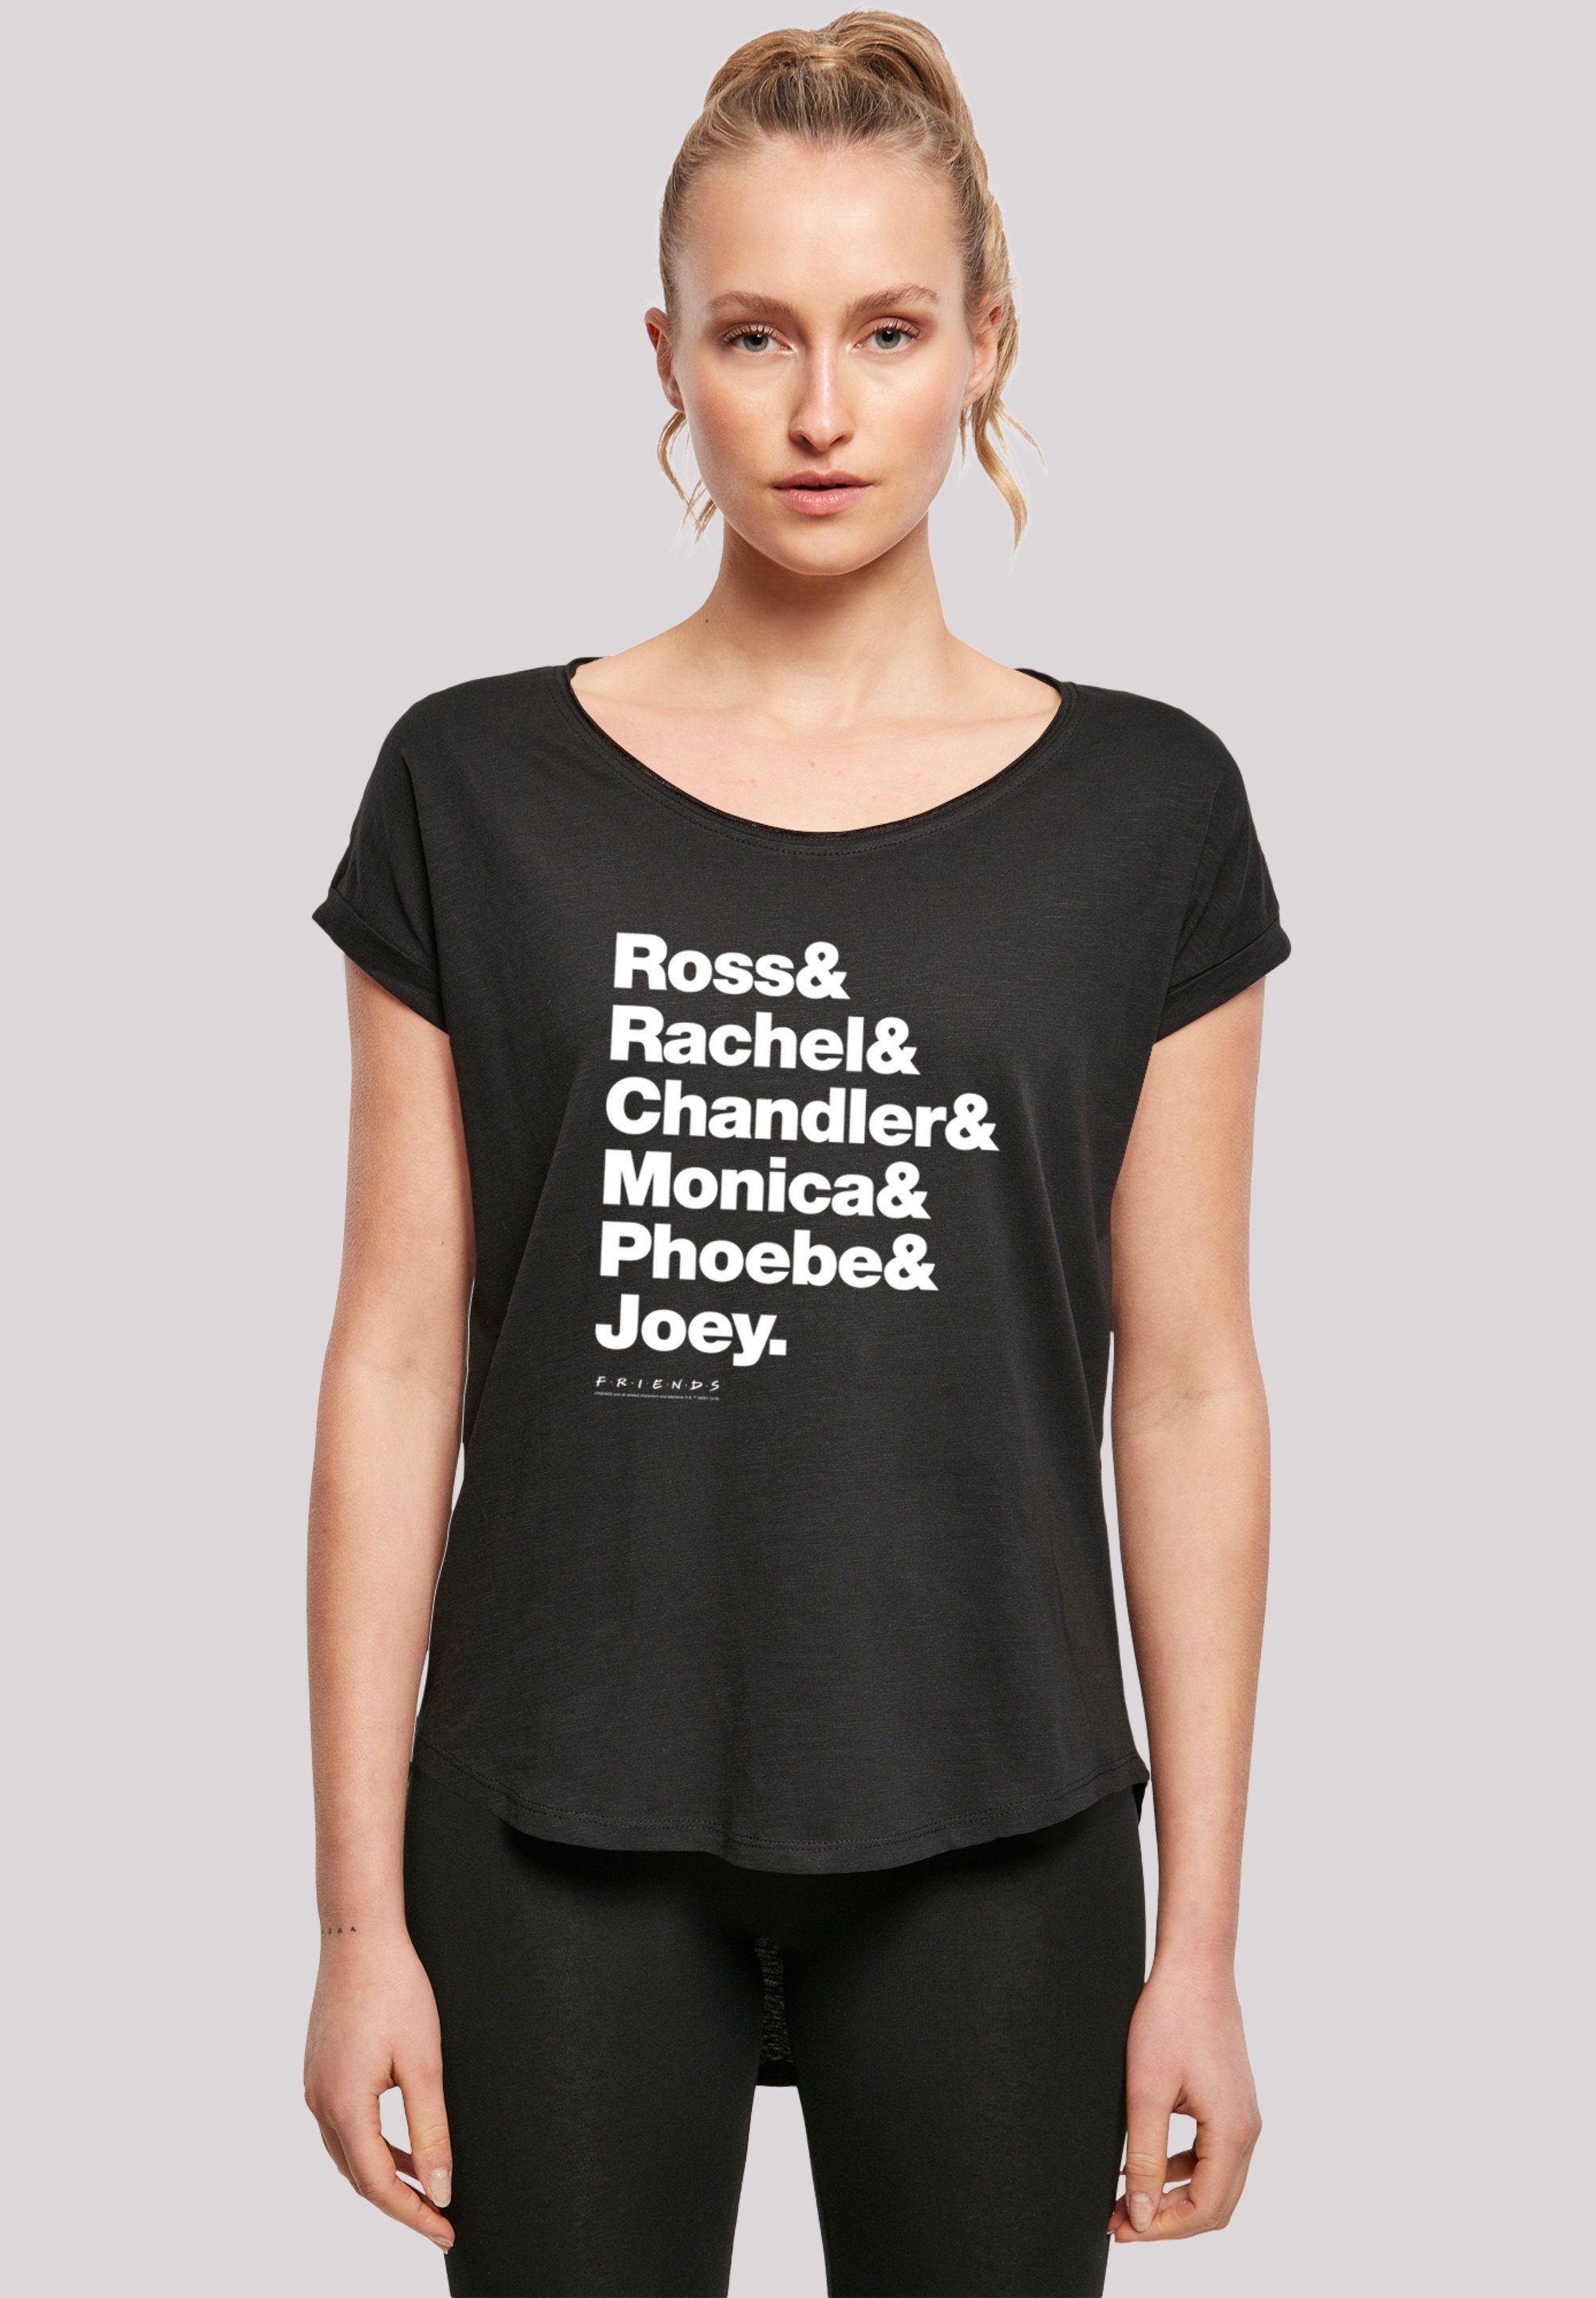 F4NT4STIC T-Shirt FRIENDS Ross & Rachel & Chandler & Monica & Phoebe & Joey Print